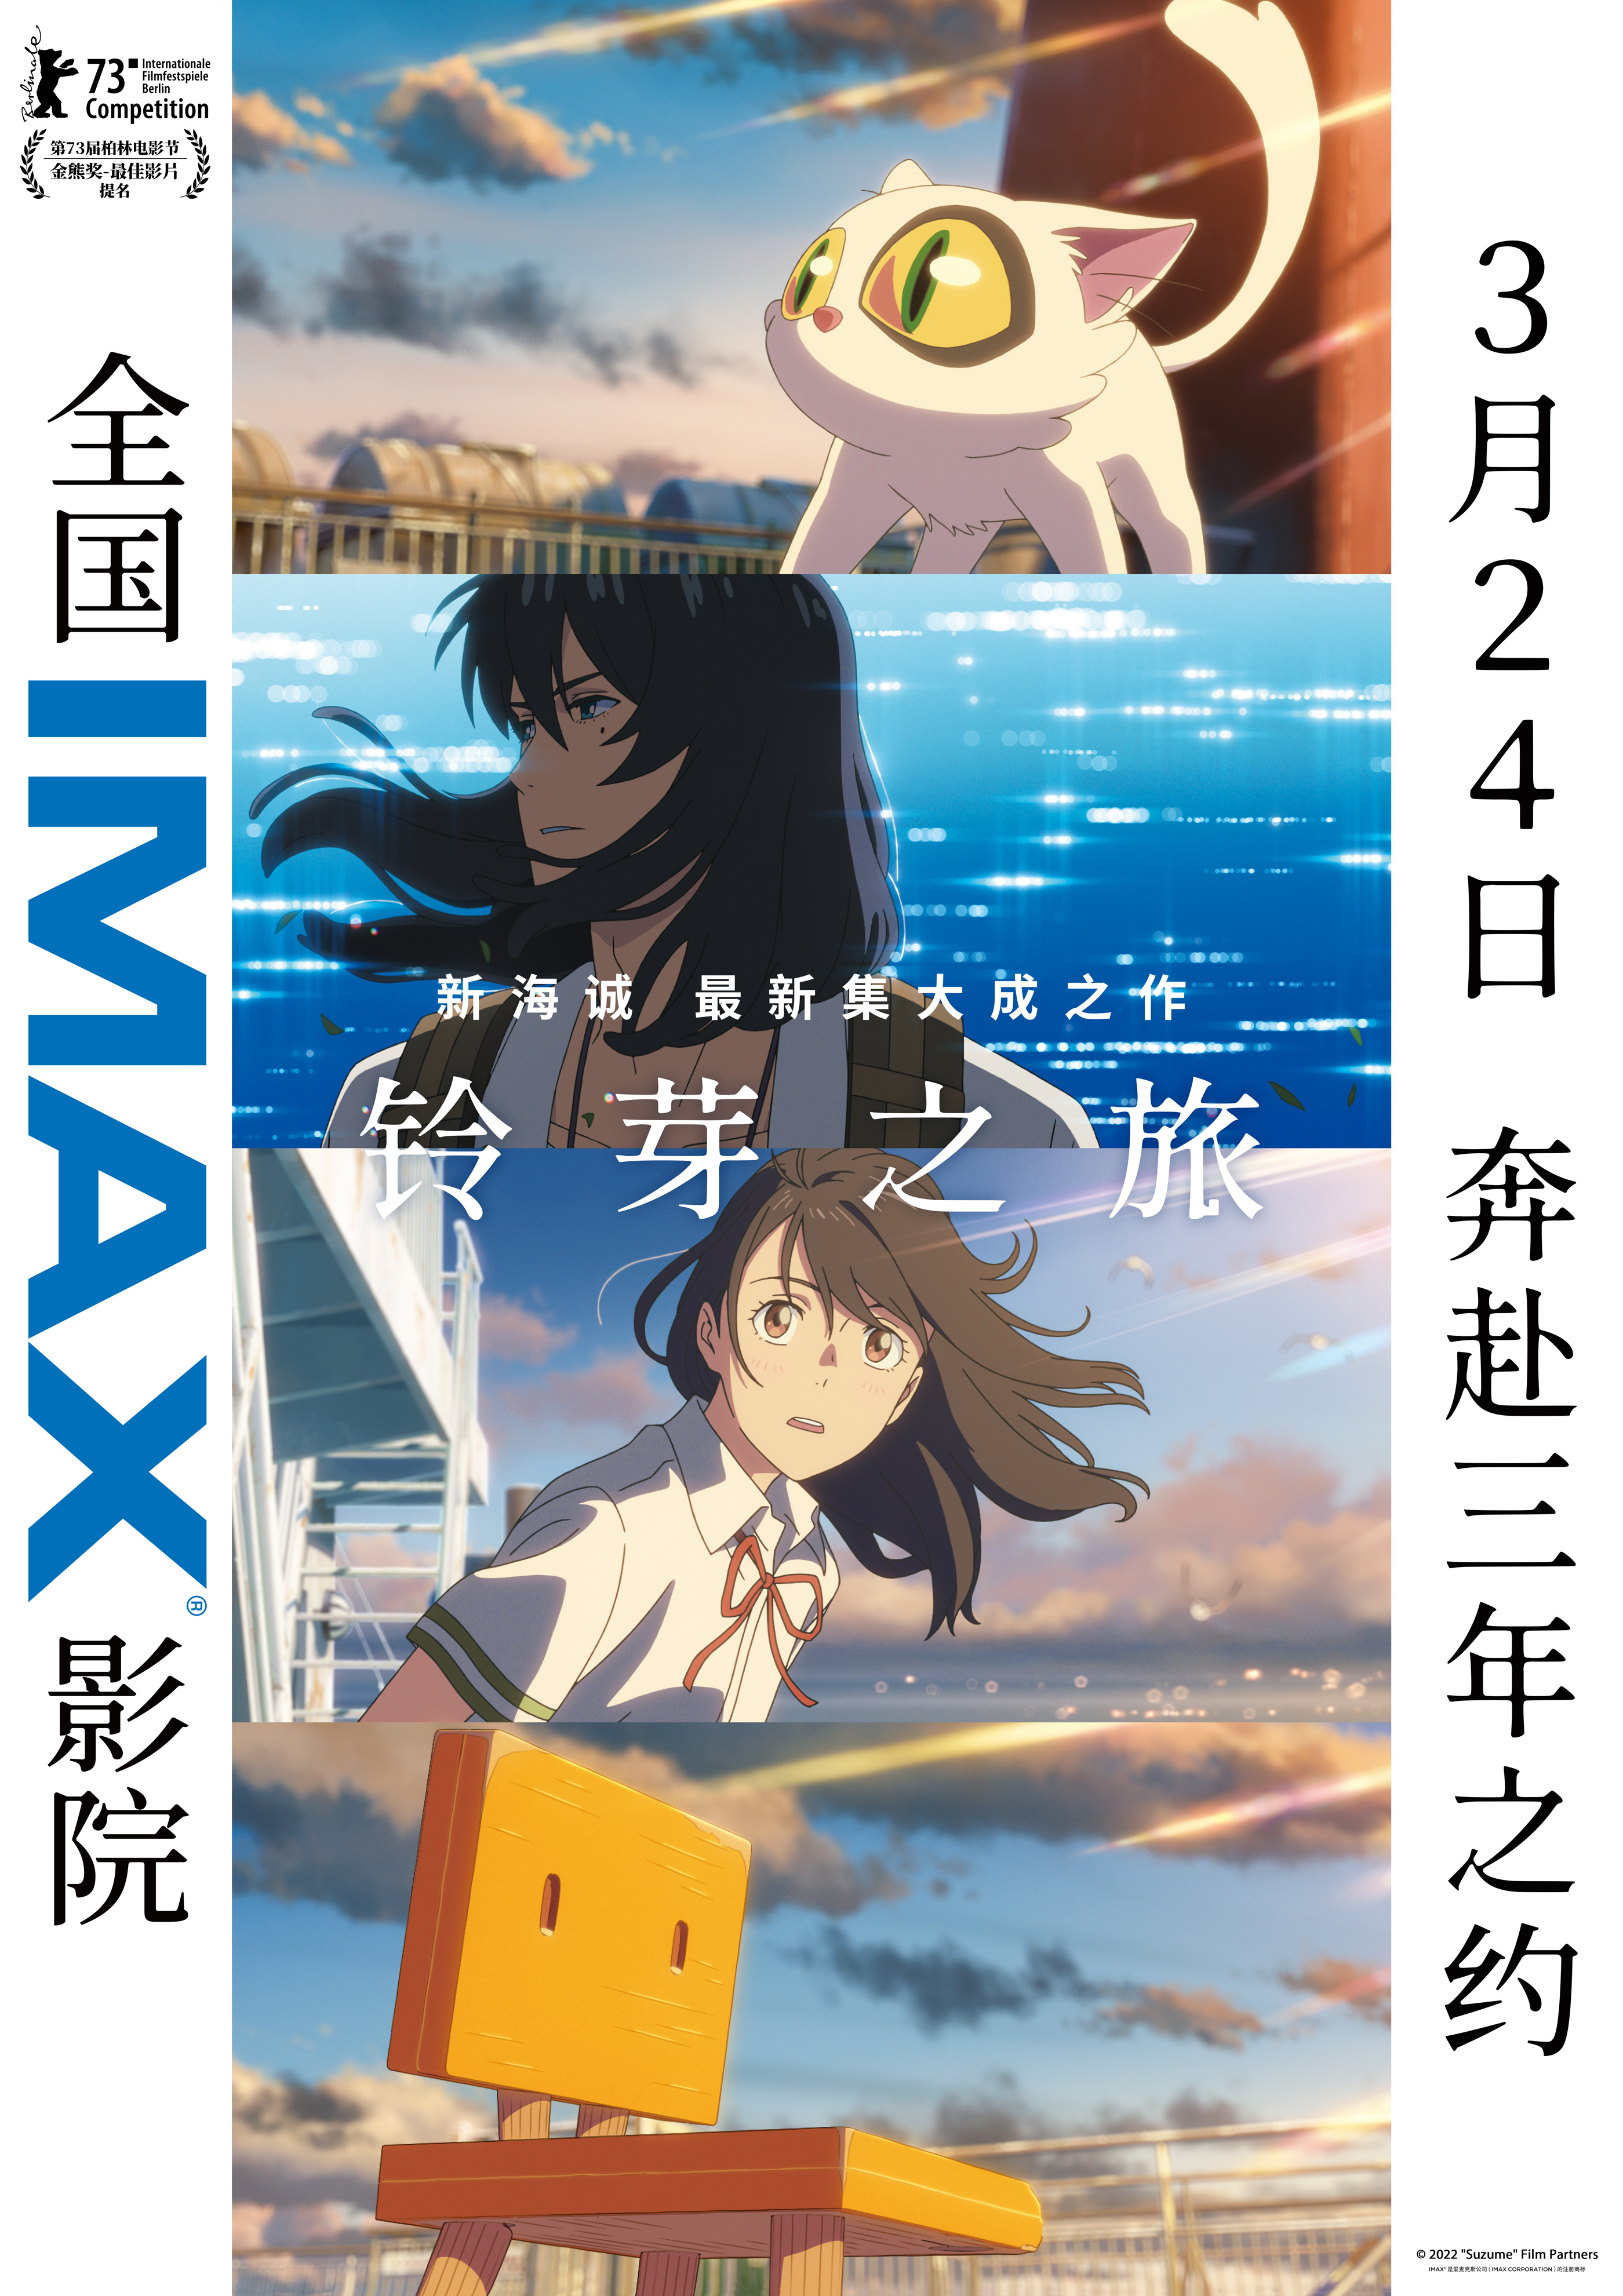 《铃芽之旅》IMAX专属海报.jpg